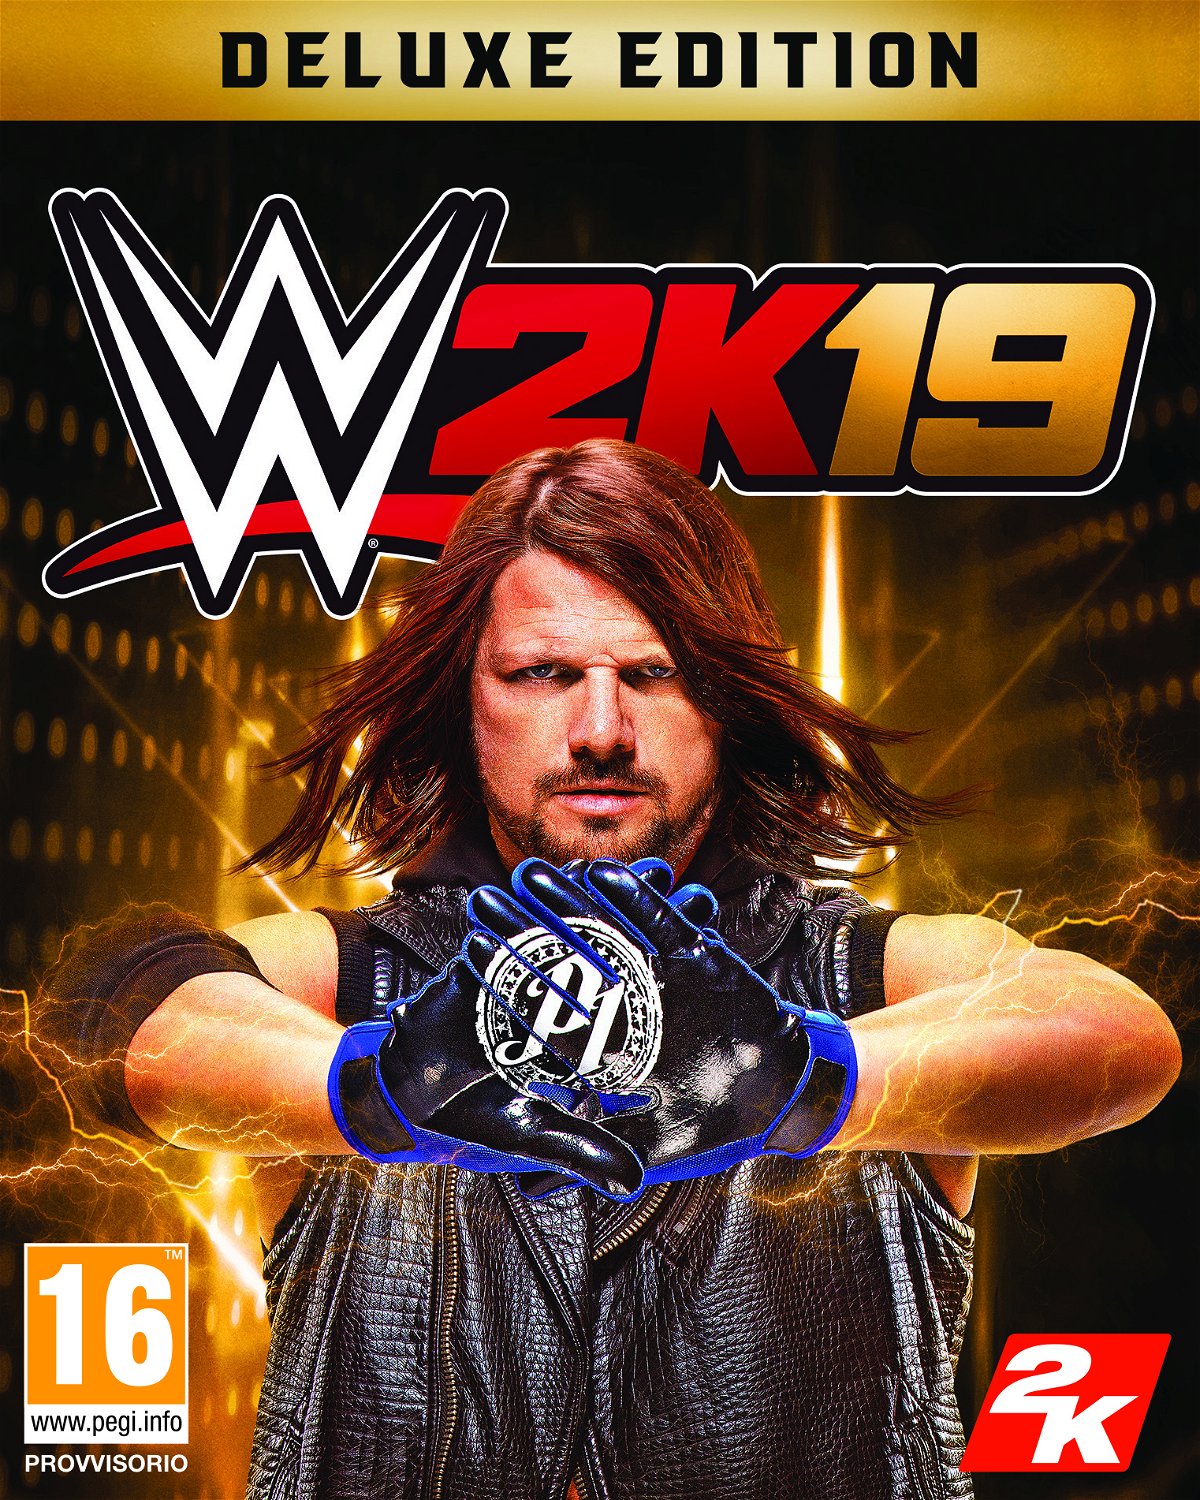 La copertina ufficiale di WWE 2K19 con Aj Styles